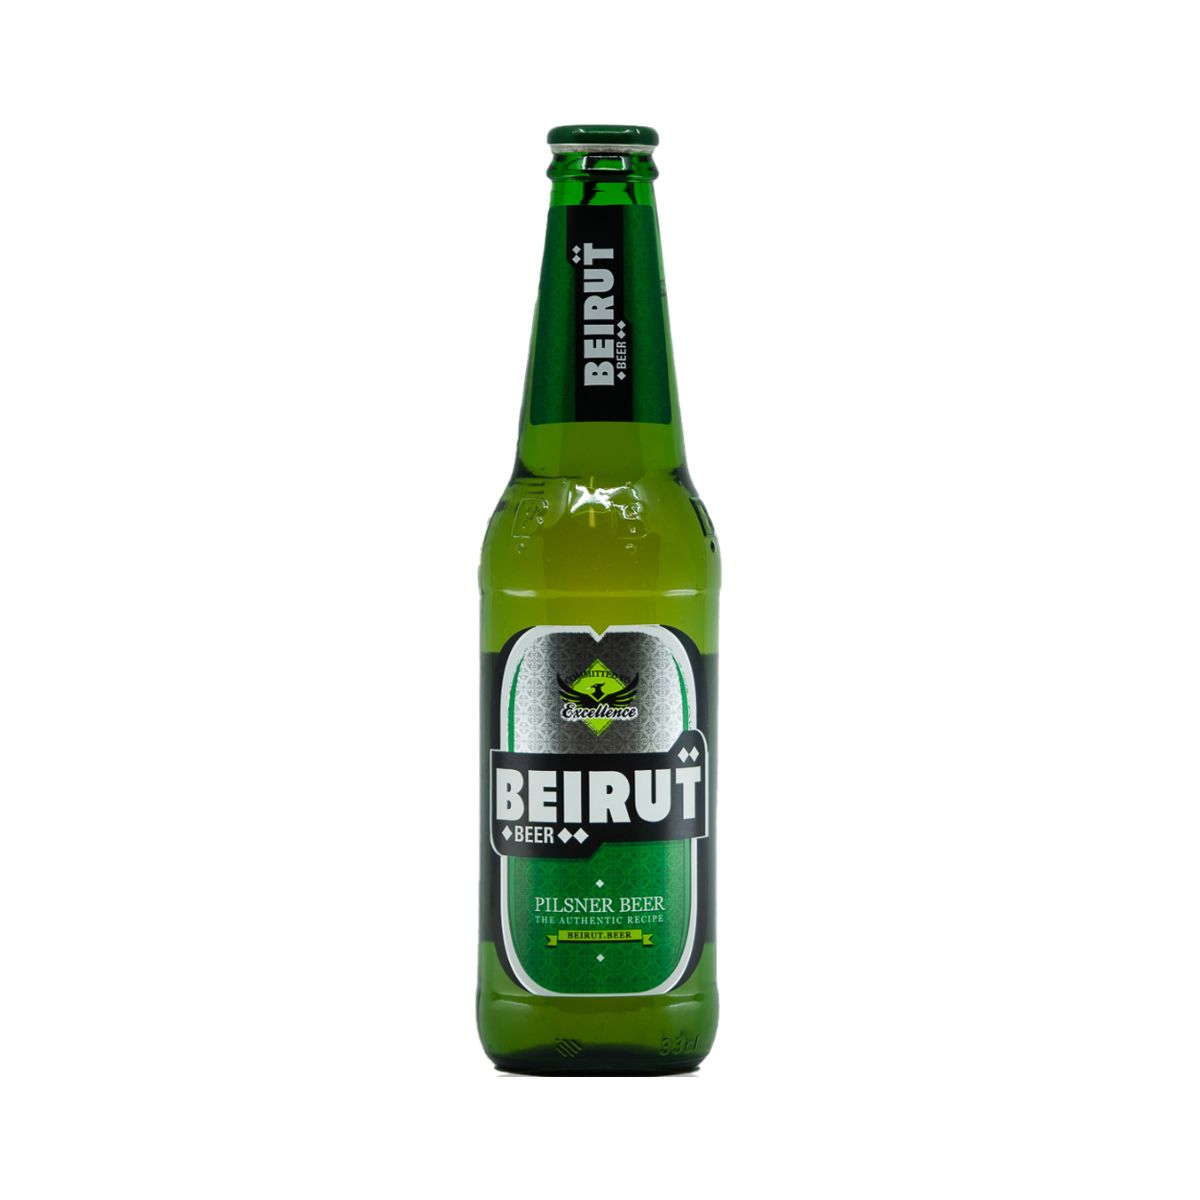 Beirut Beer 0,33l fl